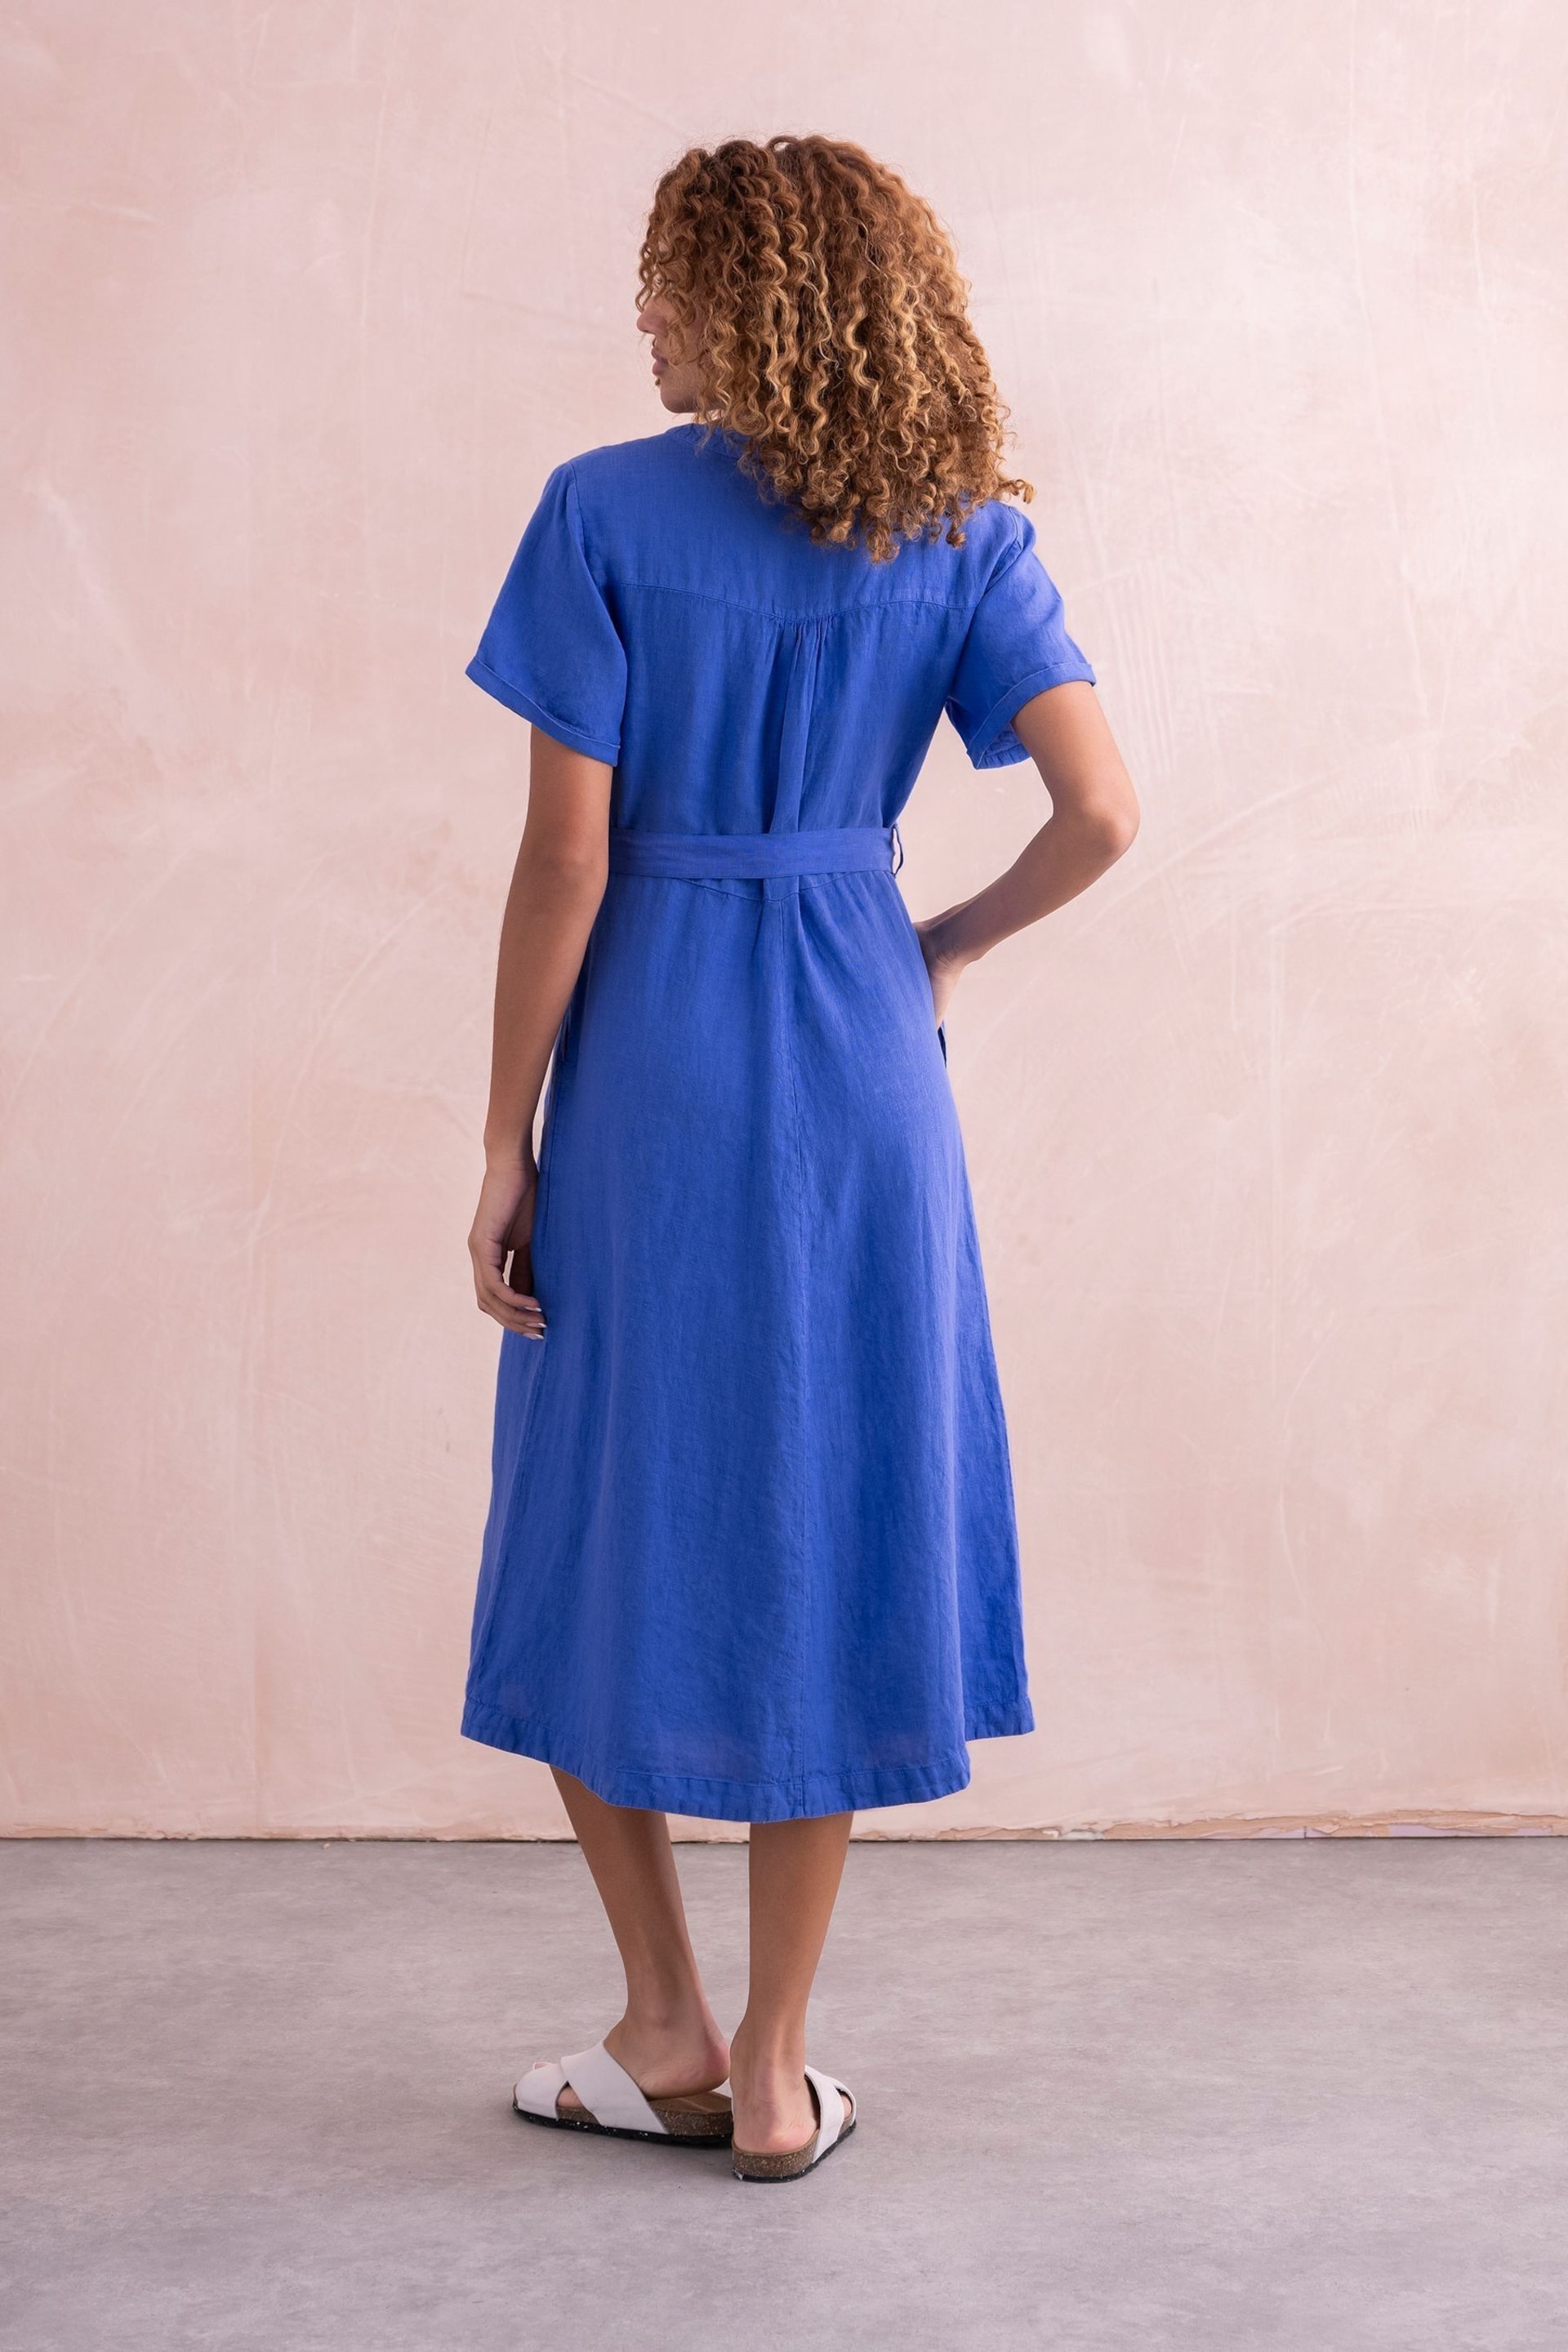 Celtic & Co. Blue Linen Button Through Dress - Image 2 of 7